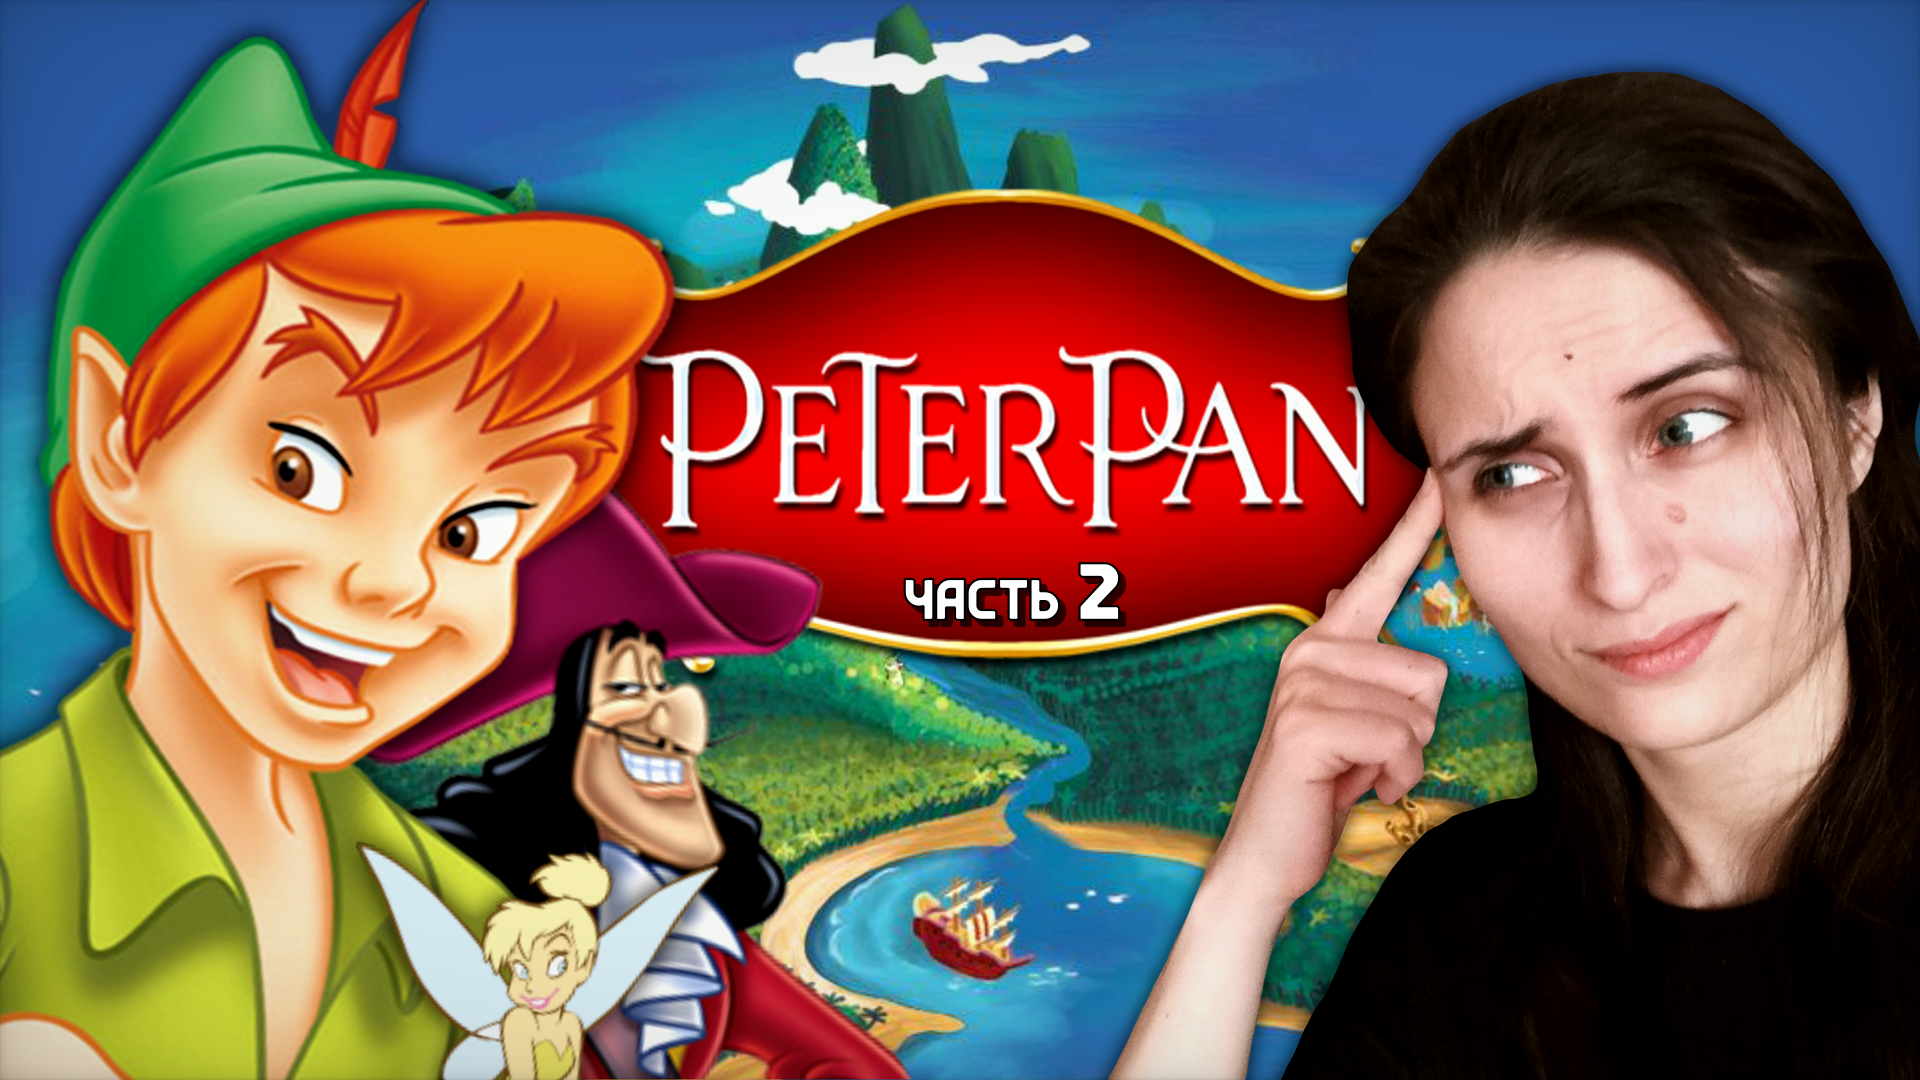 НОВЫЕ МЕХАНИЗМЫ И ОПАСНОСТЬ КРУГОМ! ➤ Peter Pan: Return to Neverland [часть 2, прохождение PS1]